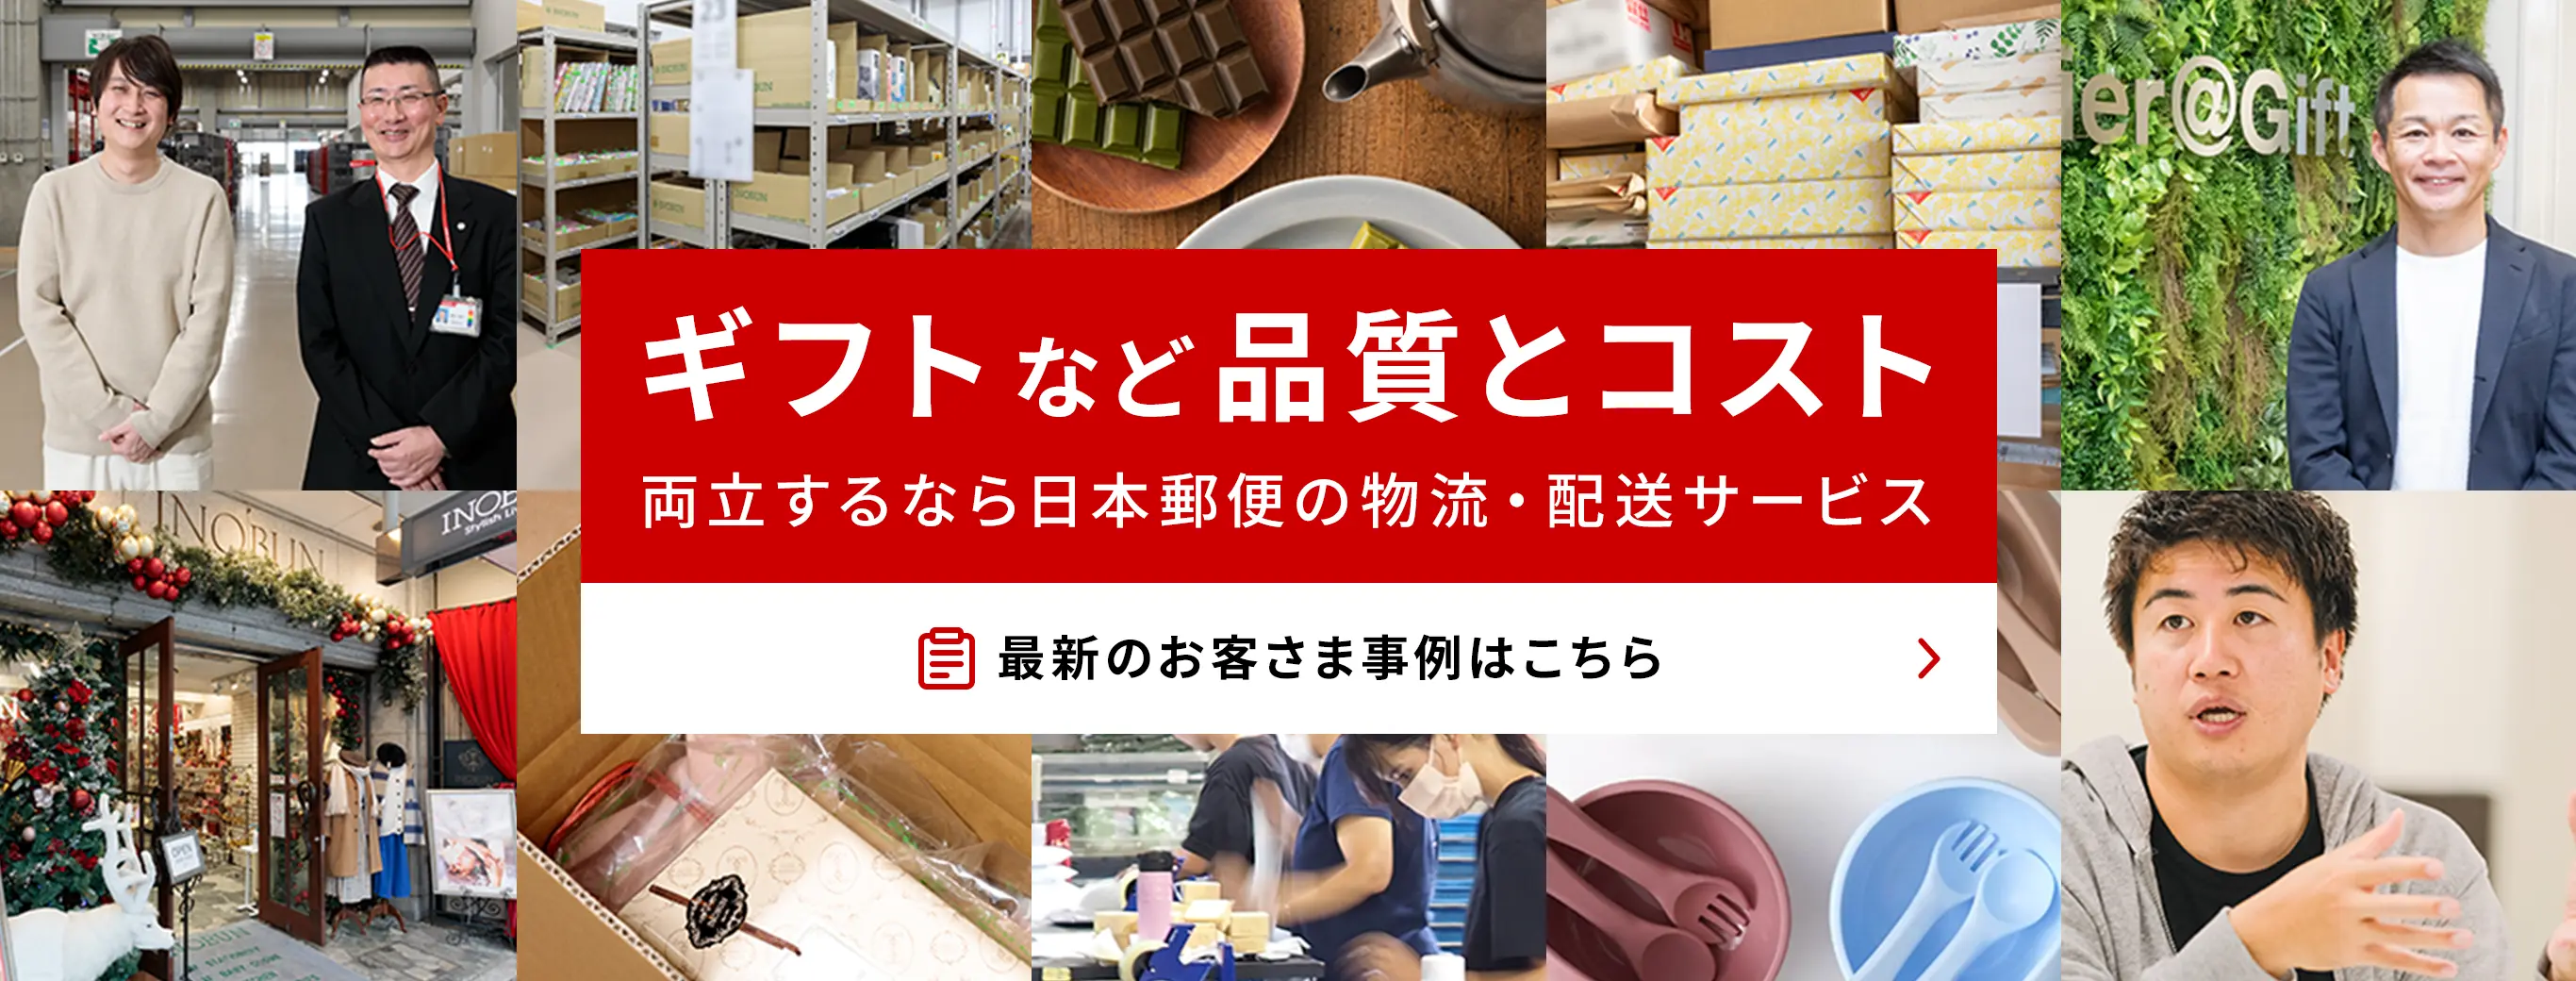 ギフトなど品質とコスト 両立するなら日本郵便の物流・配送サービス 最新のお客さま事例はこちら